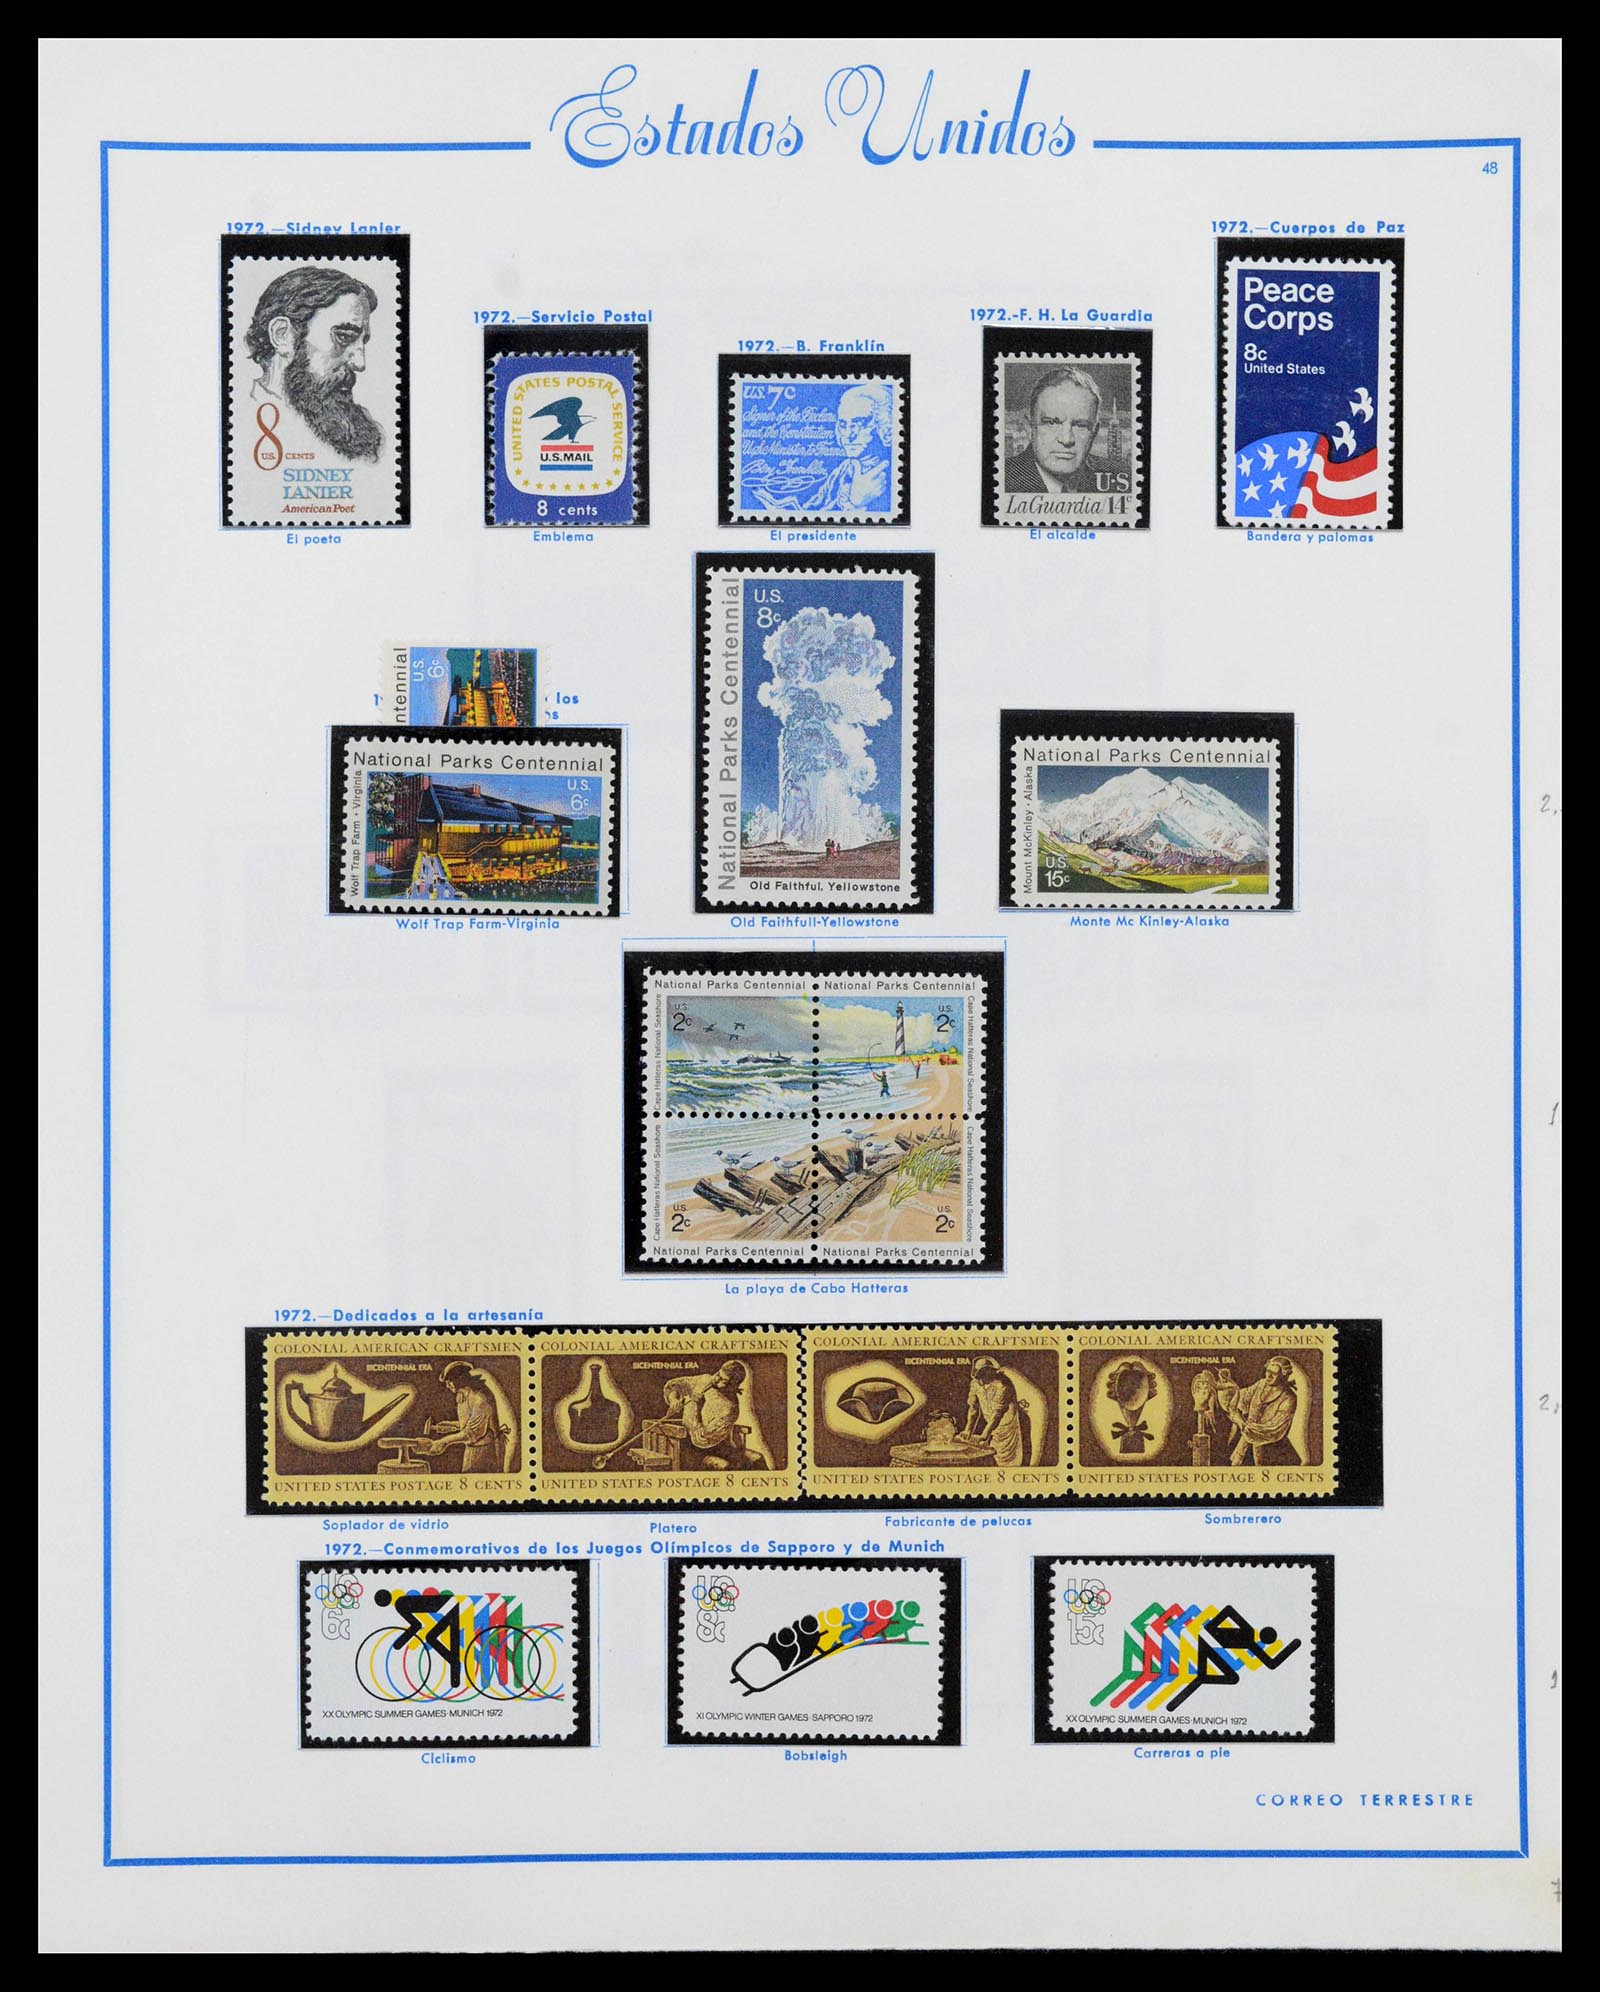 39190 0053 - Stamp collection 39190 USA 1851-1975.